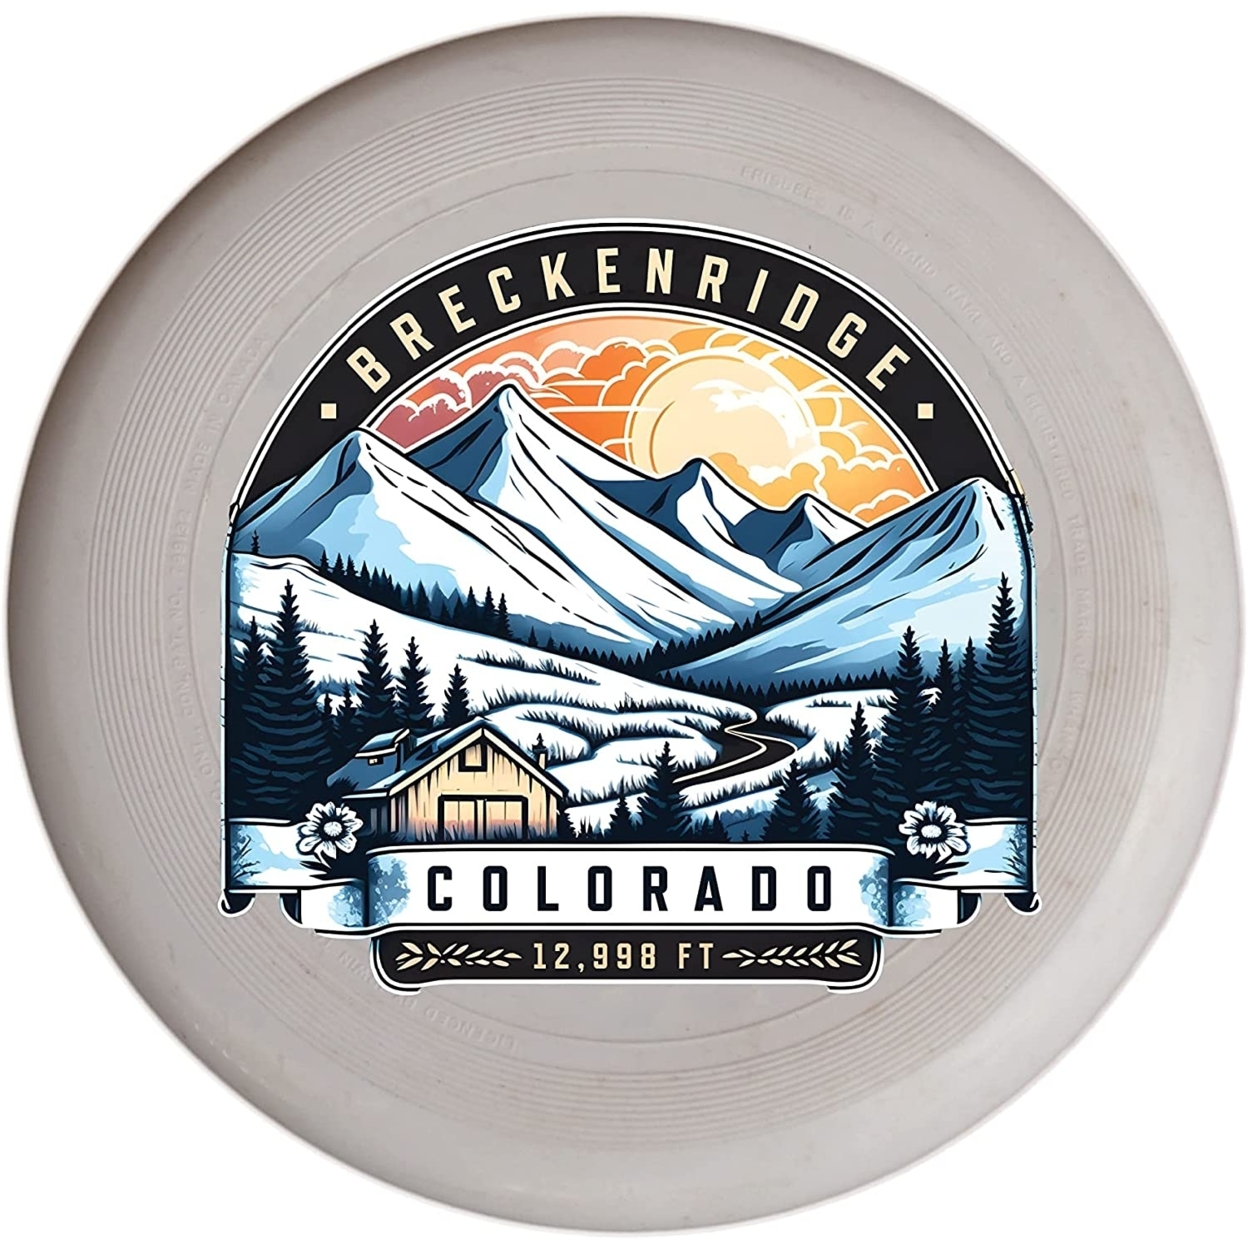 Breckenridge Colorado Souvenir Frisbee Flying Disc